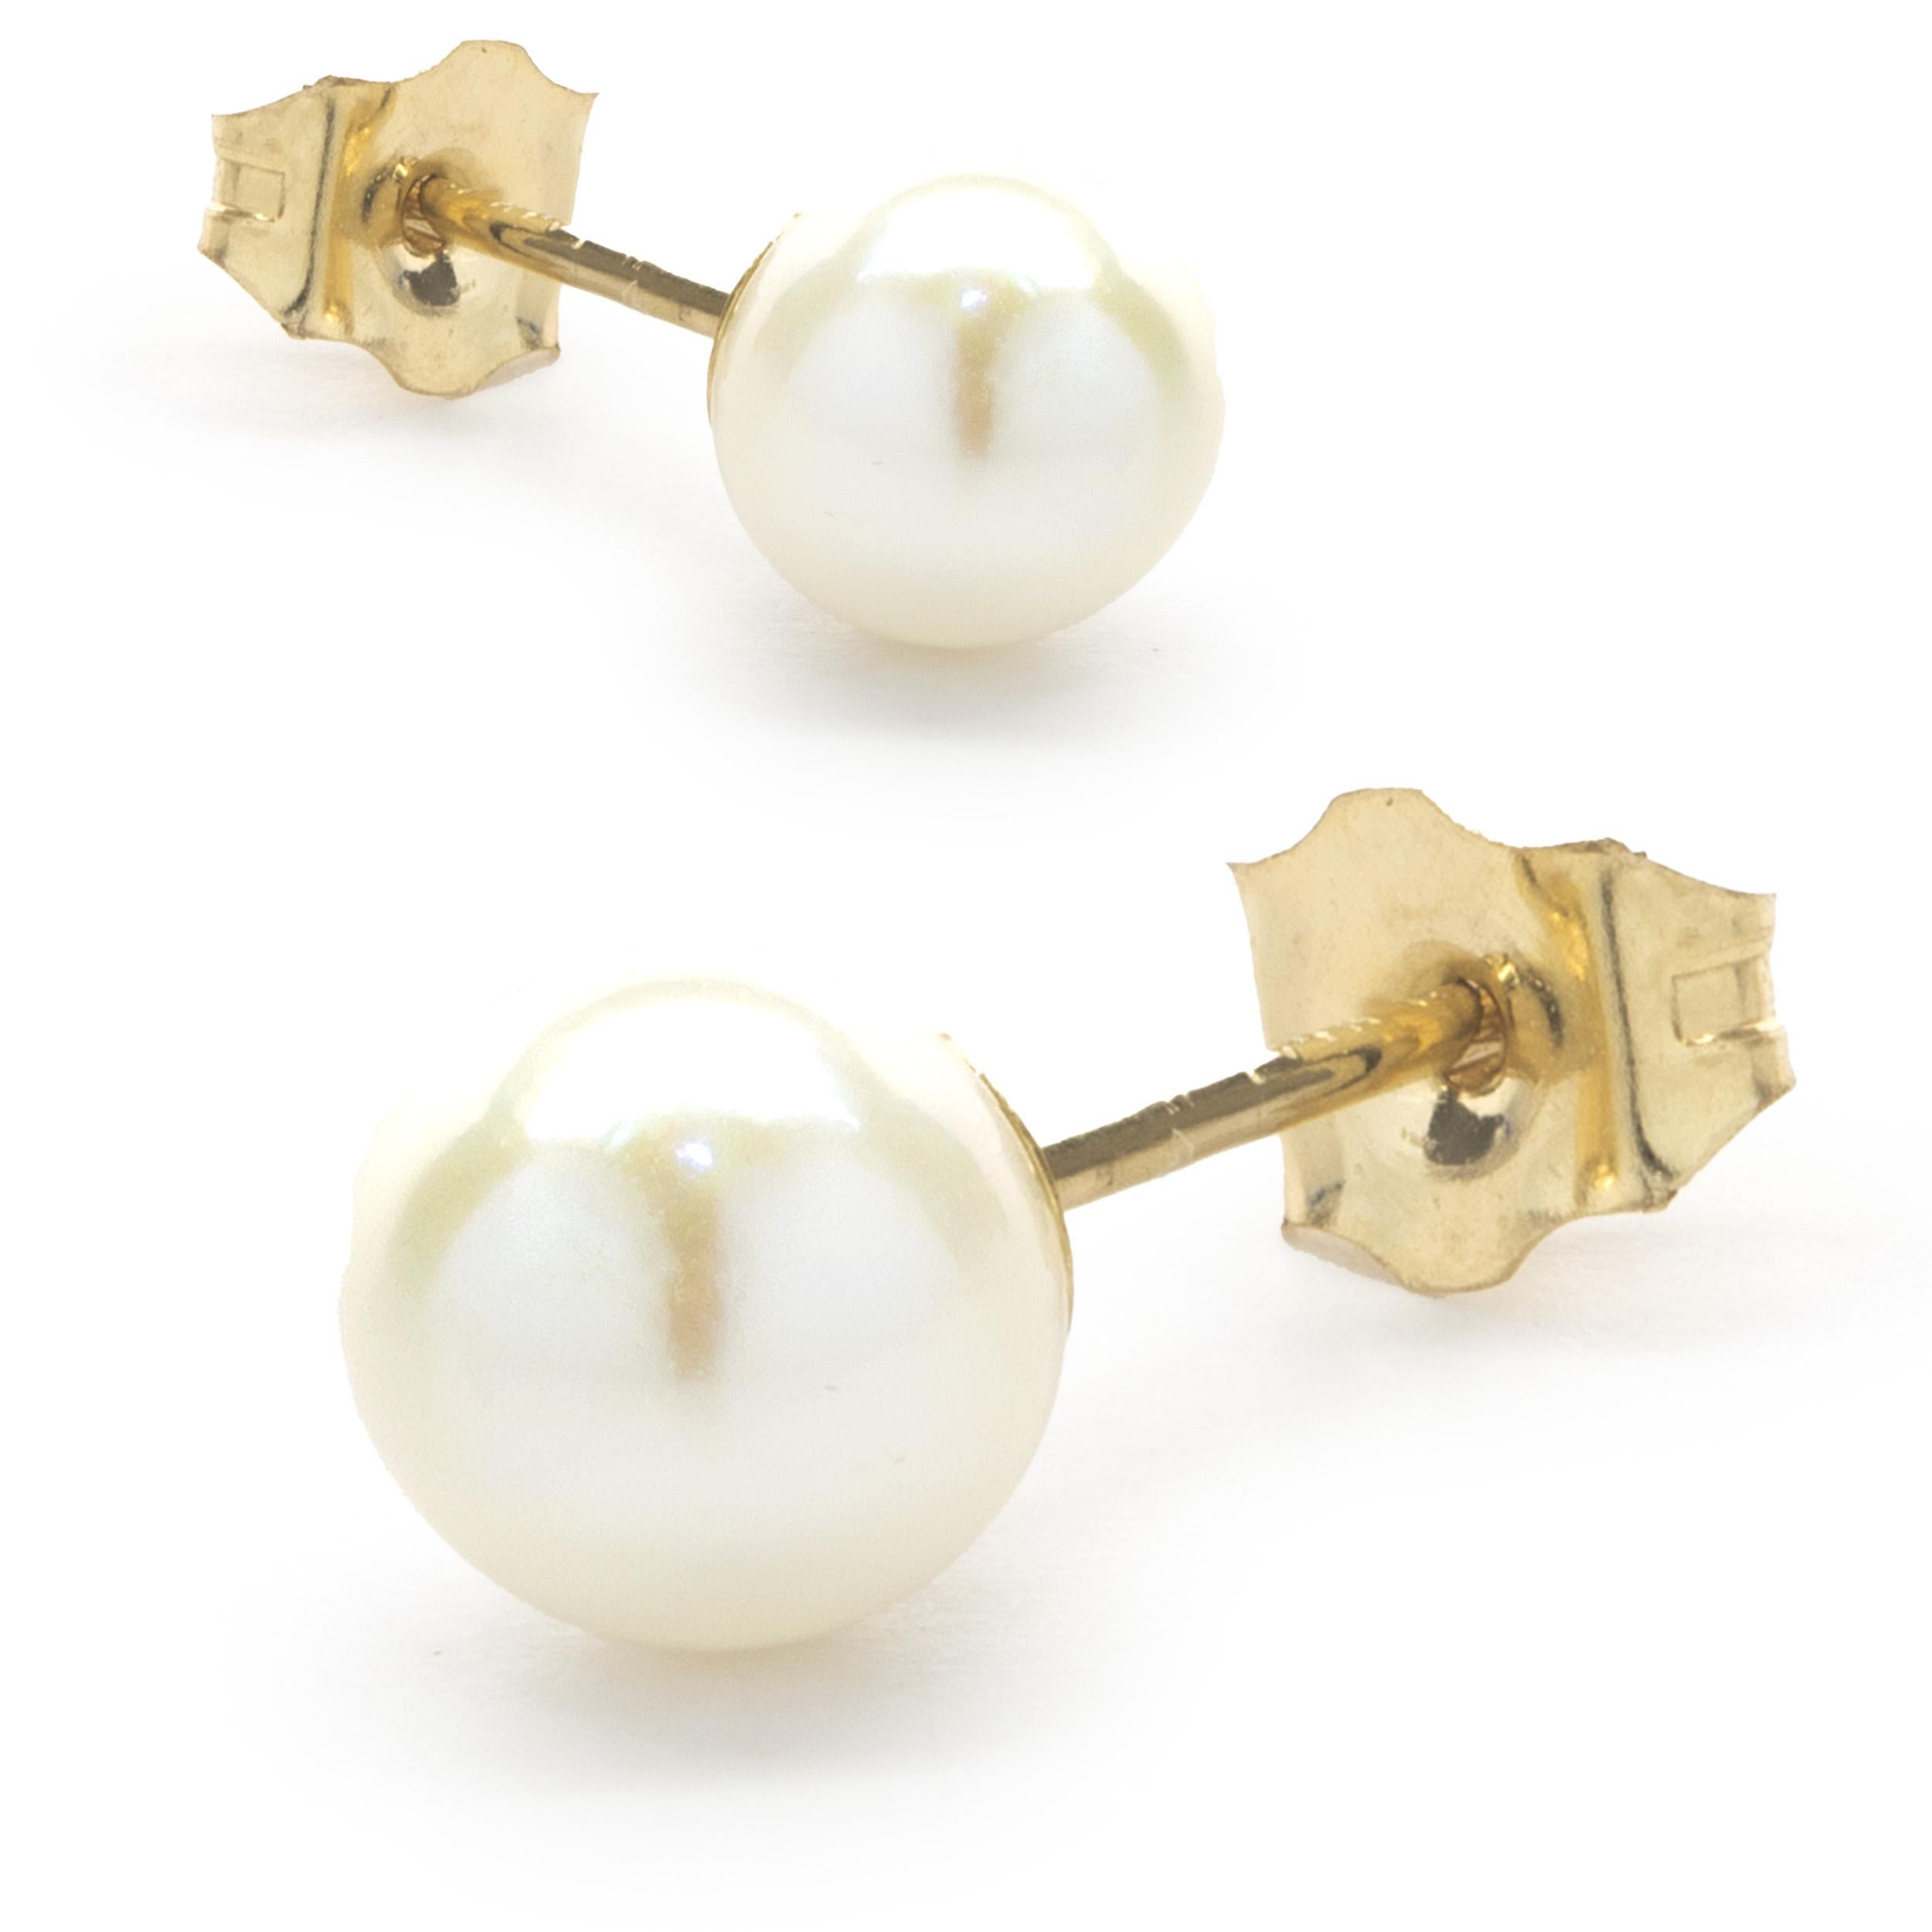 Designer: custom designed
Material: 14K yellow gold
Dimensions: earrings measure 5.60mm
Weight: 0.70 grams